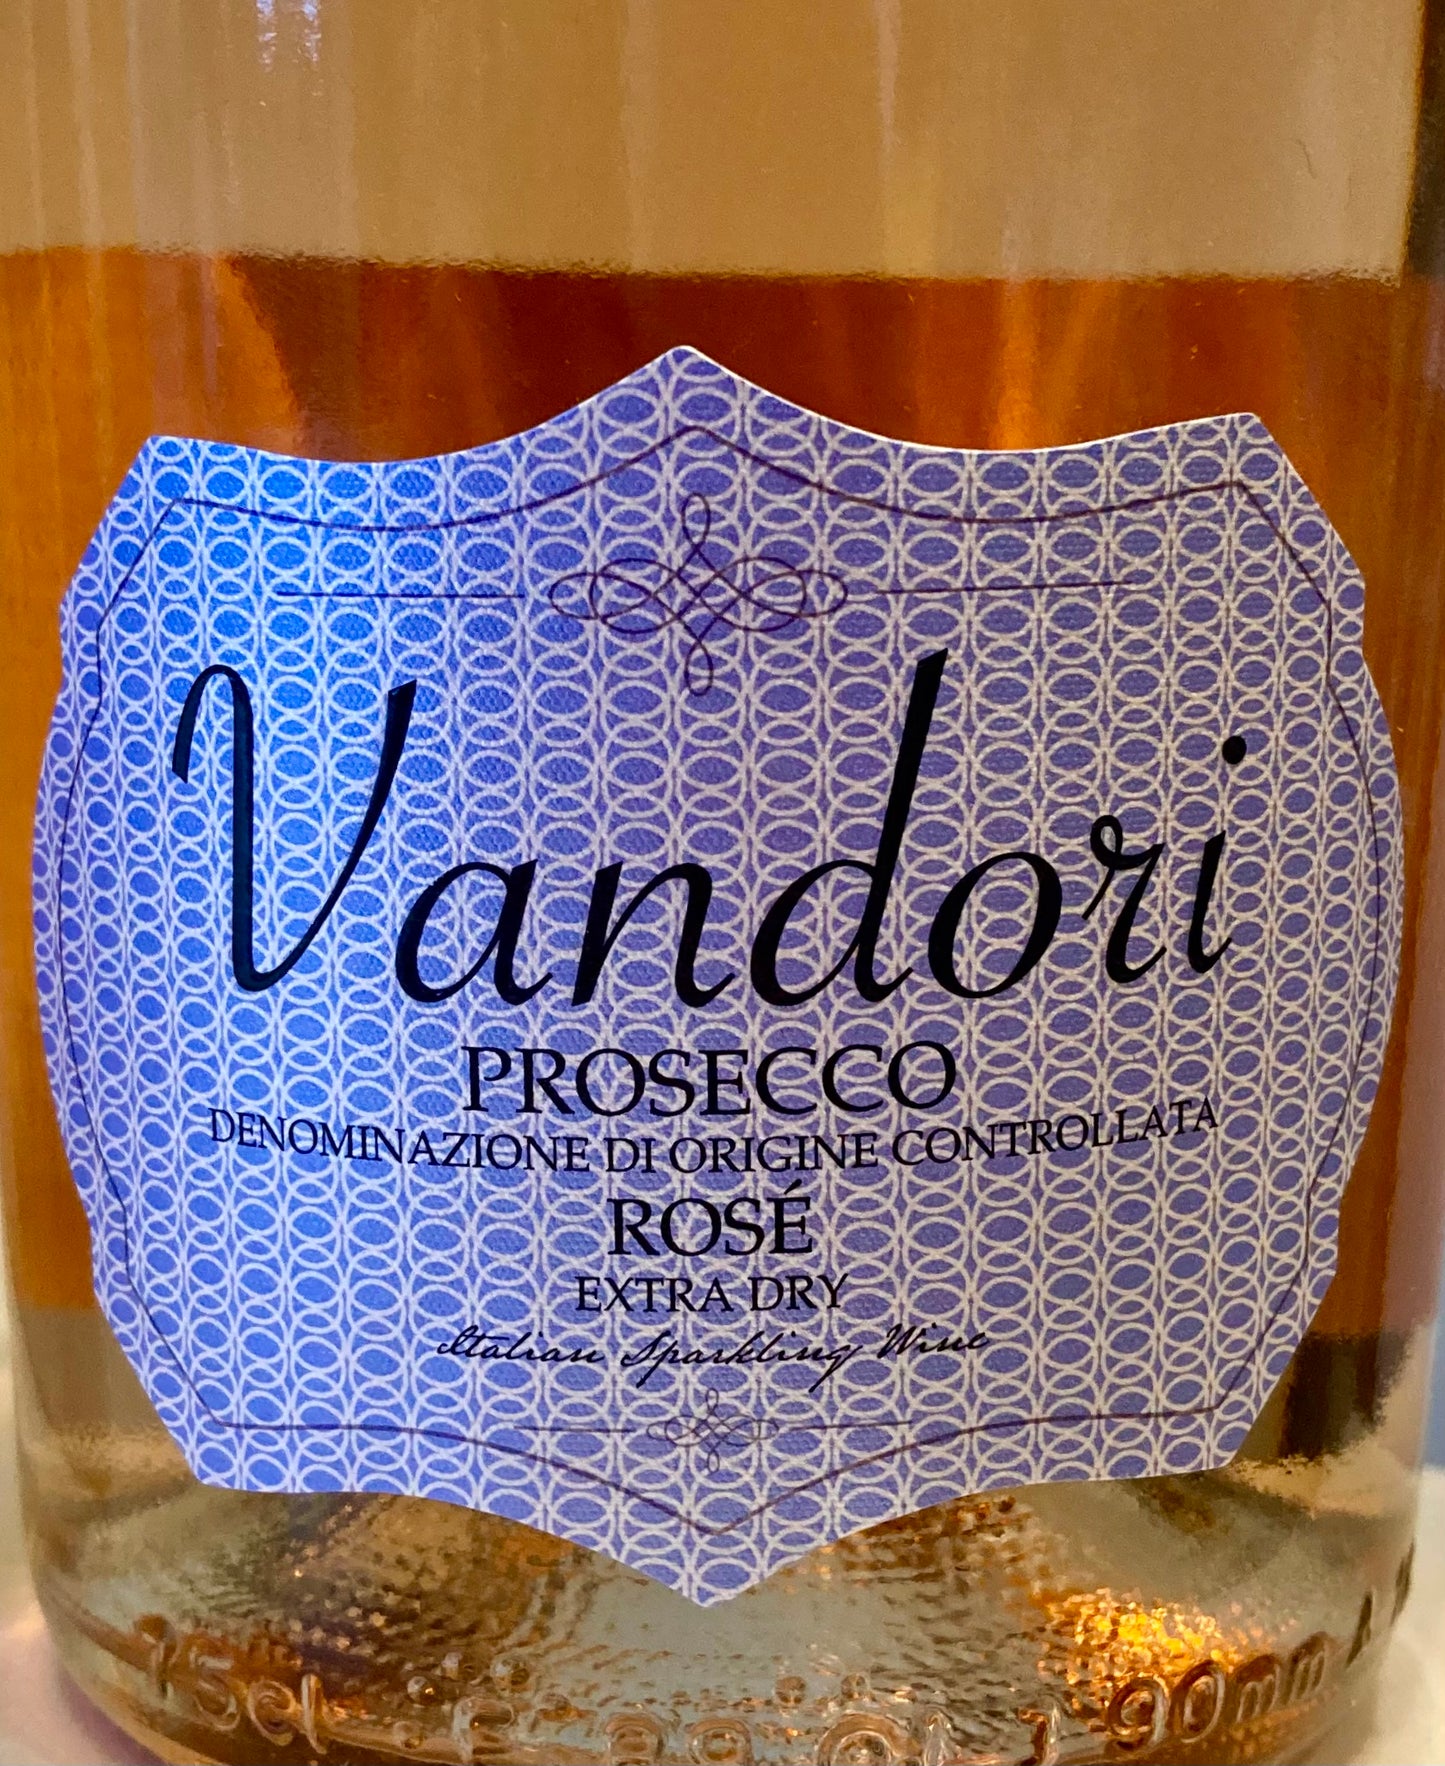 Vandori Prosecco Rose